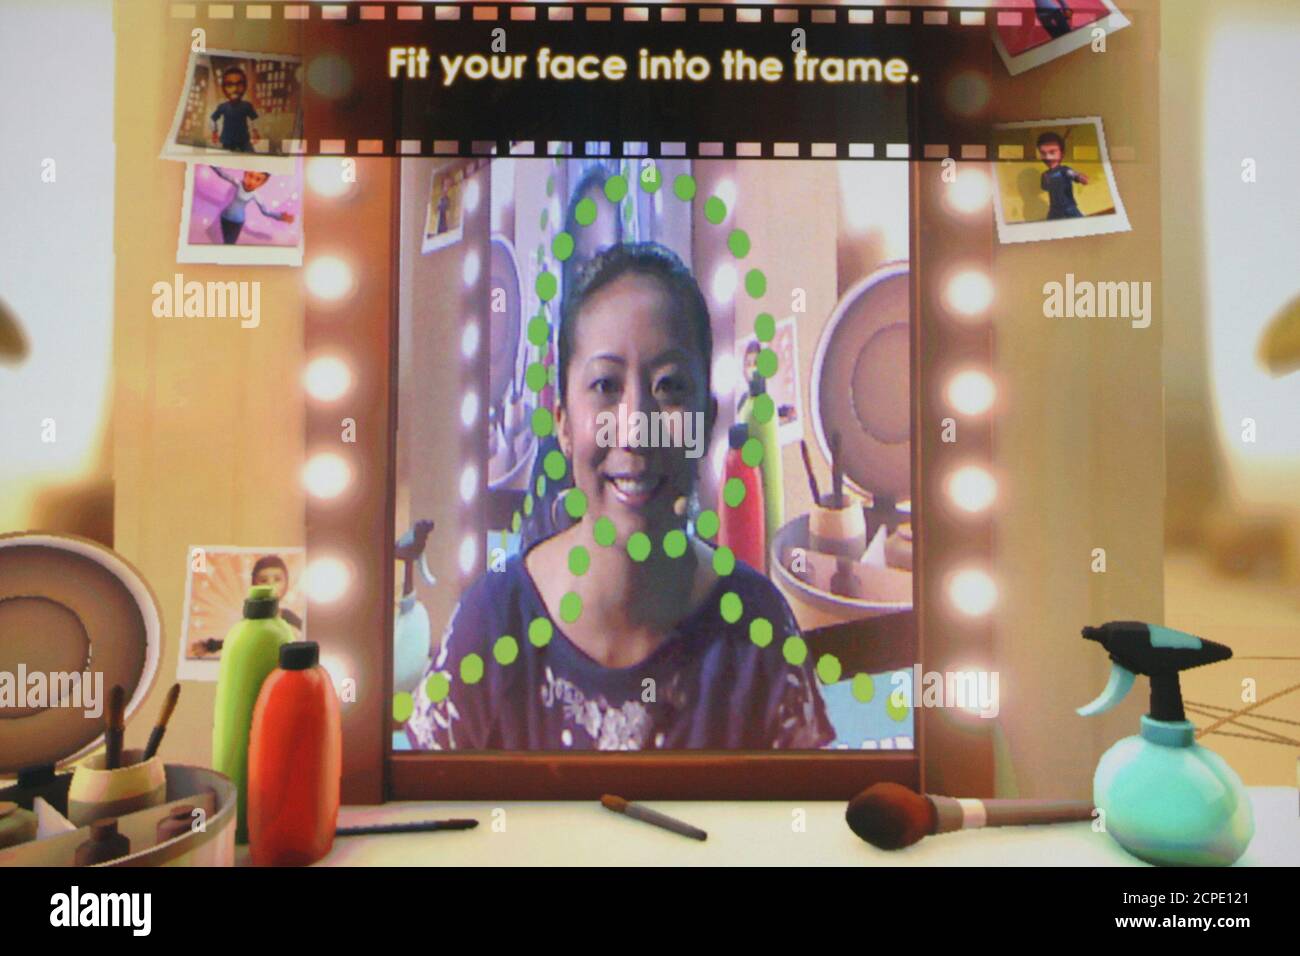 Tạo hình đại diện với tính năng mới của Kinect Fun Labs: Tính năng tạo hình đại diện mới của Kinect Fun Labs đã ra mắt với rất nhiều tính năng độc đáo và tiện ích. Bạn có thể tạo ra những hình đại diện 3D, tương tác với những môi trường sống động, và thậm chí là điều khiển hình đại diện bằng cử chỉ của bạn. Hãy khám phá ngay hôm nay để trải nghiệm tính năng mới của Kinect Fun Labs.